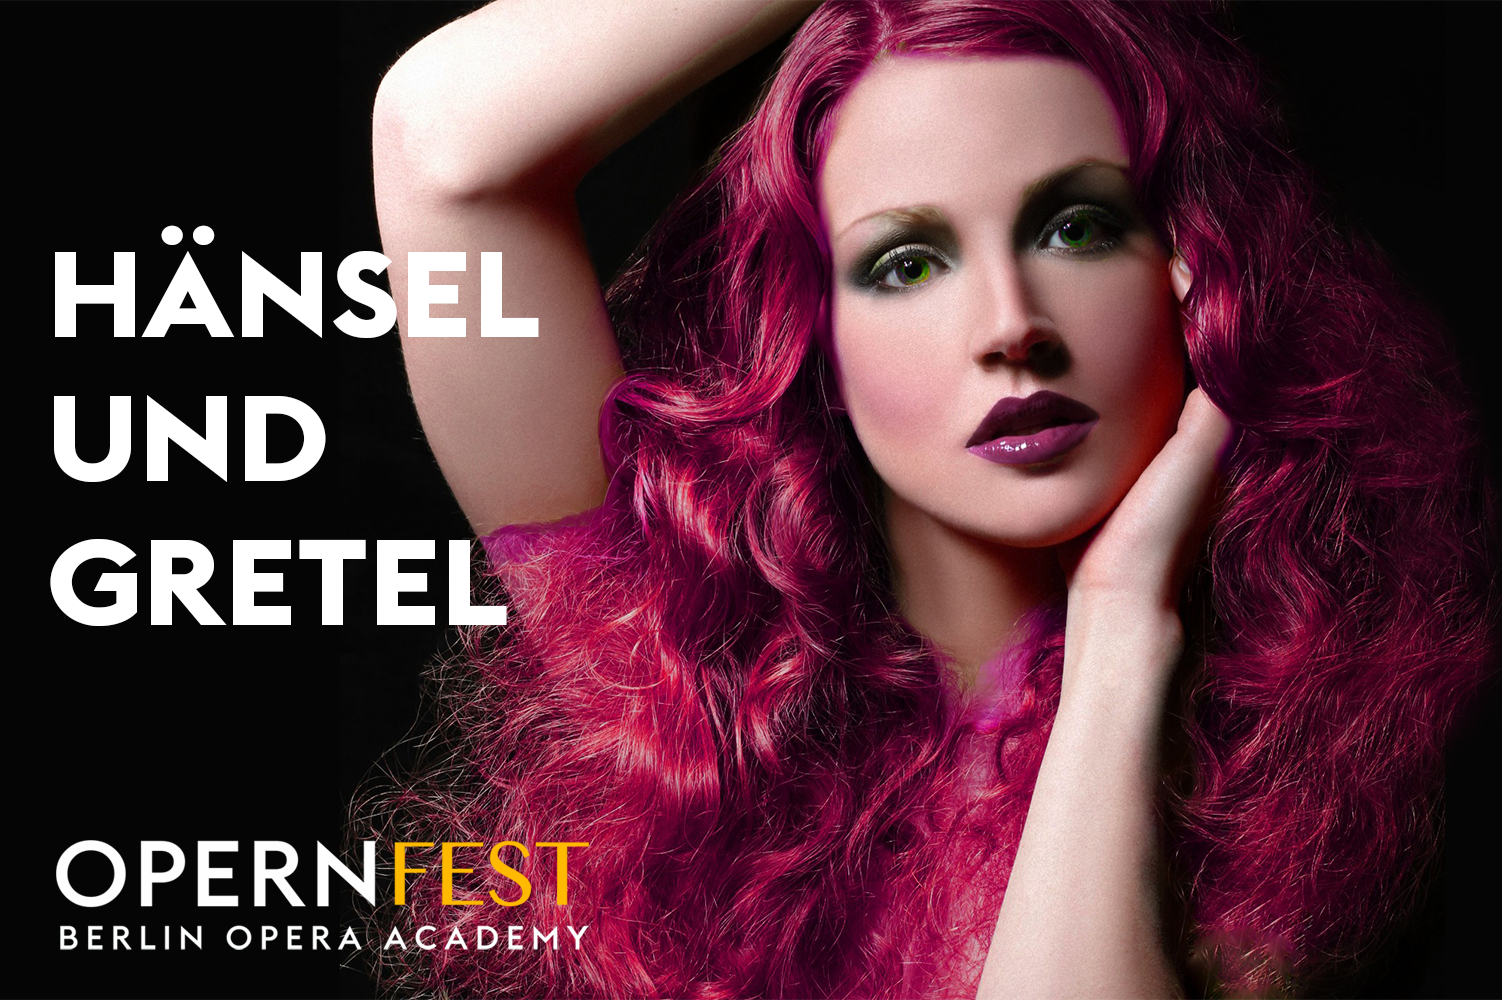 Hänsel und Gretel | opernfest berlin opera academy